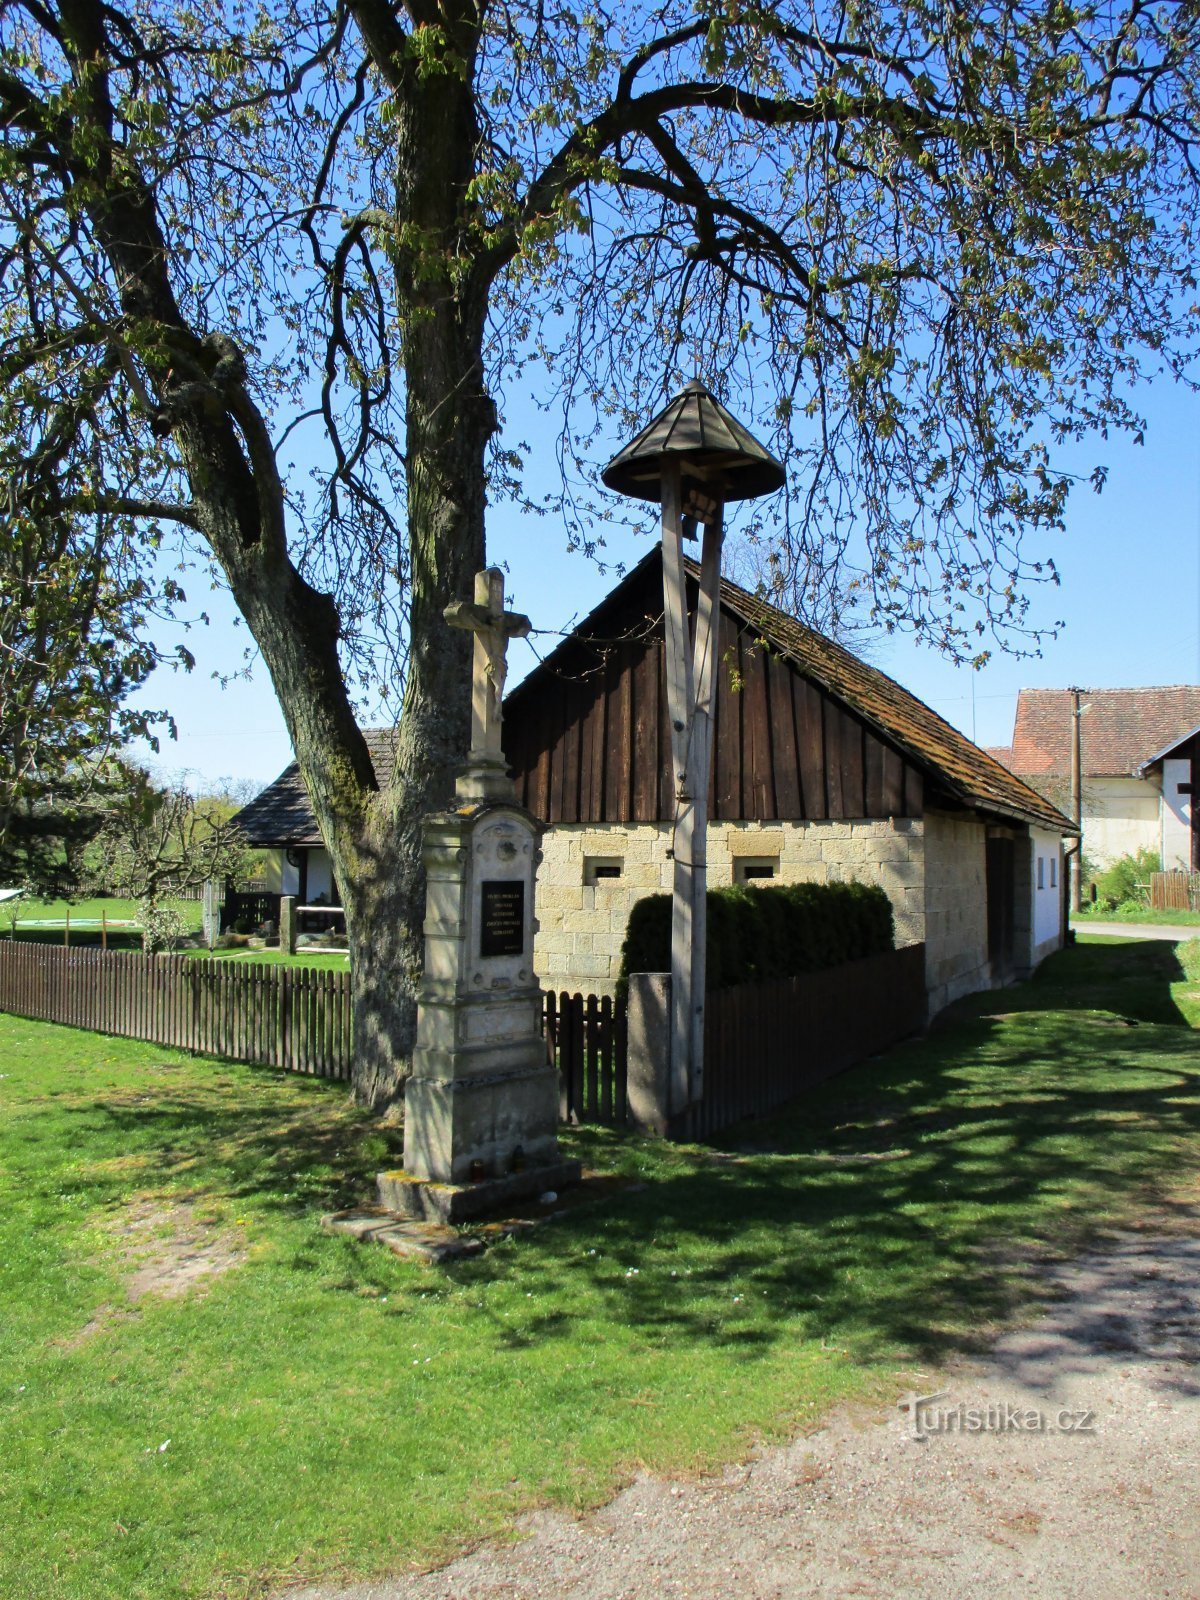 Cross with bell tower in Lhota (Lužany, 20.4.2020/XNUMX/XNUMX)